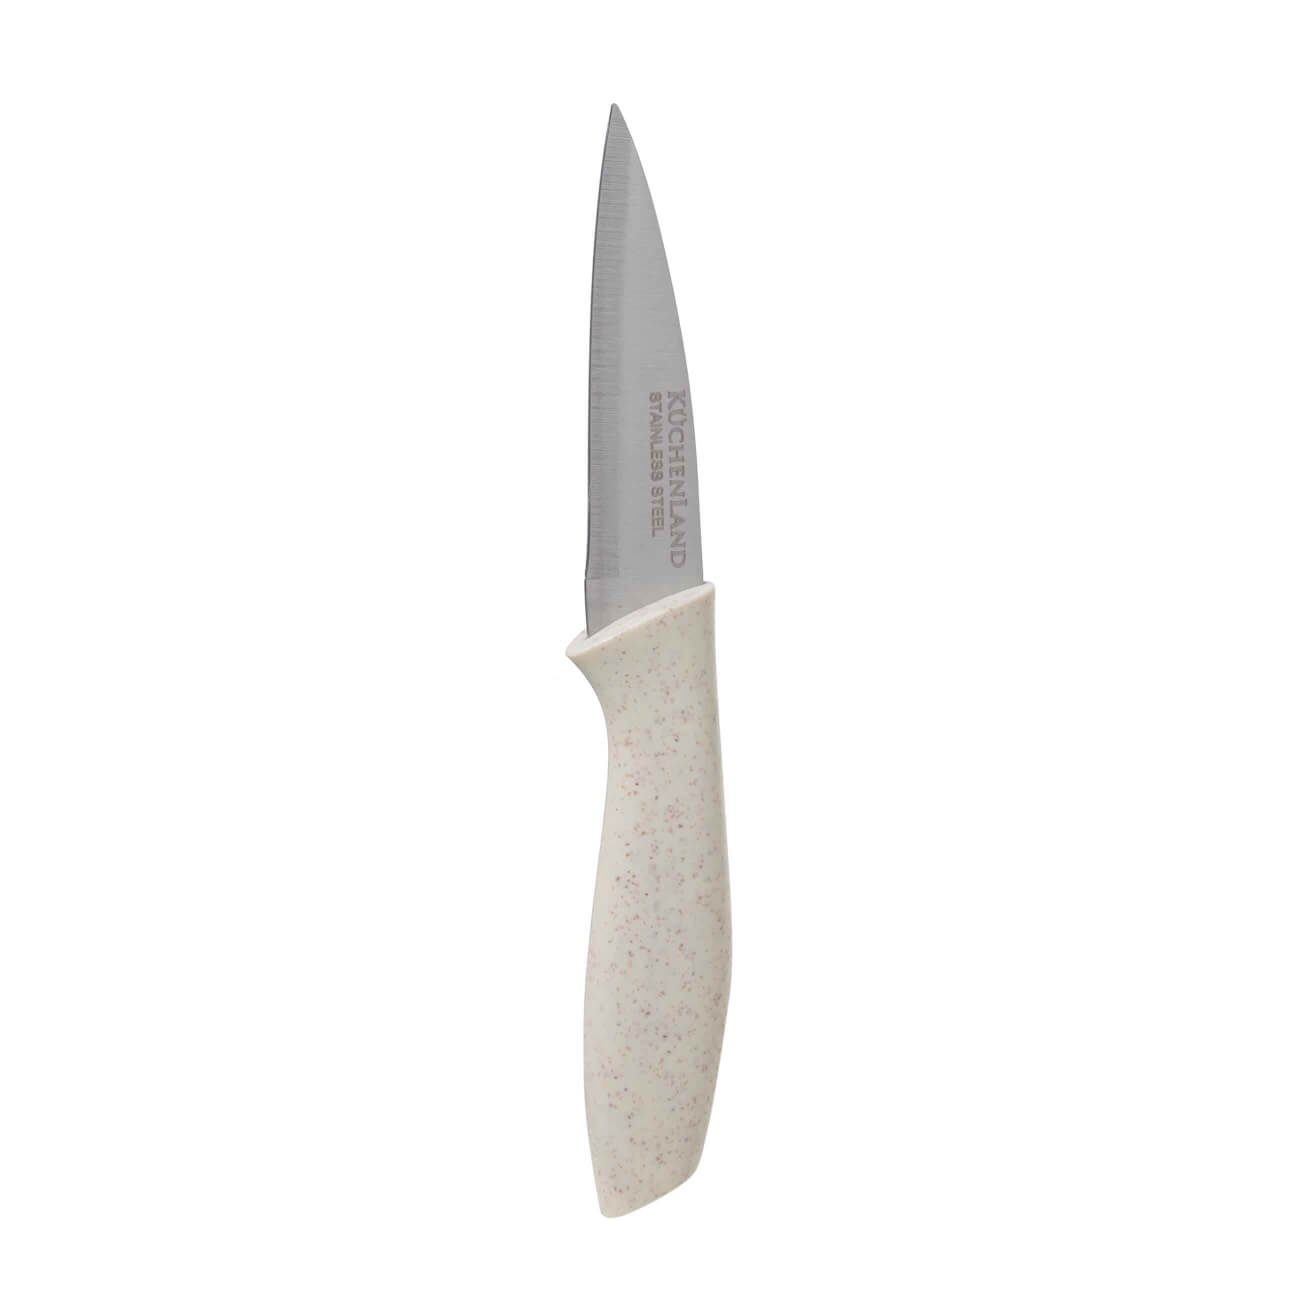 Нож для чистки овощей, 9 см, сталь/пластик, молочный, Speck-light изображение № 1